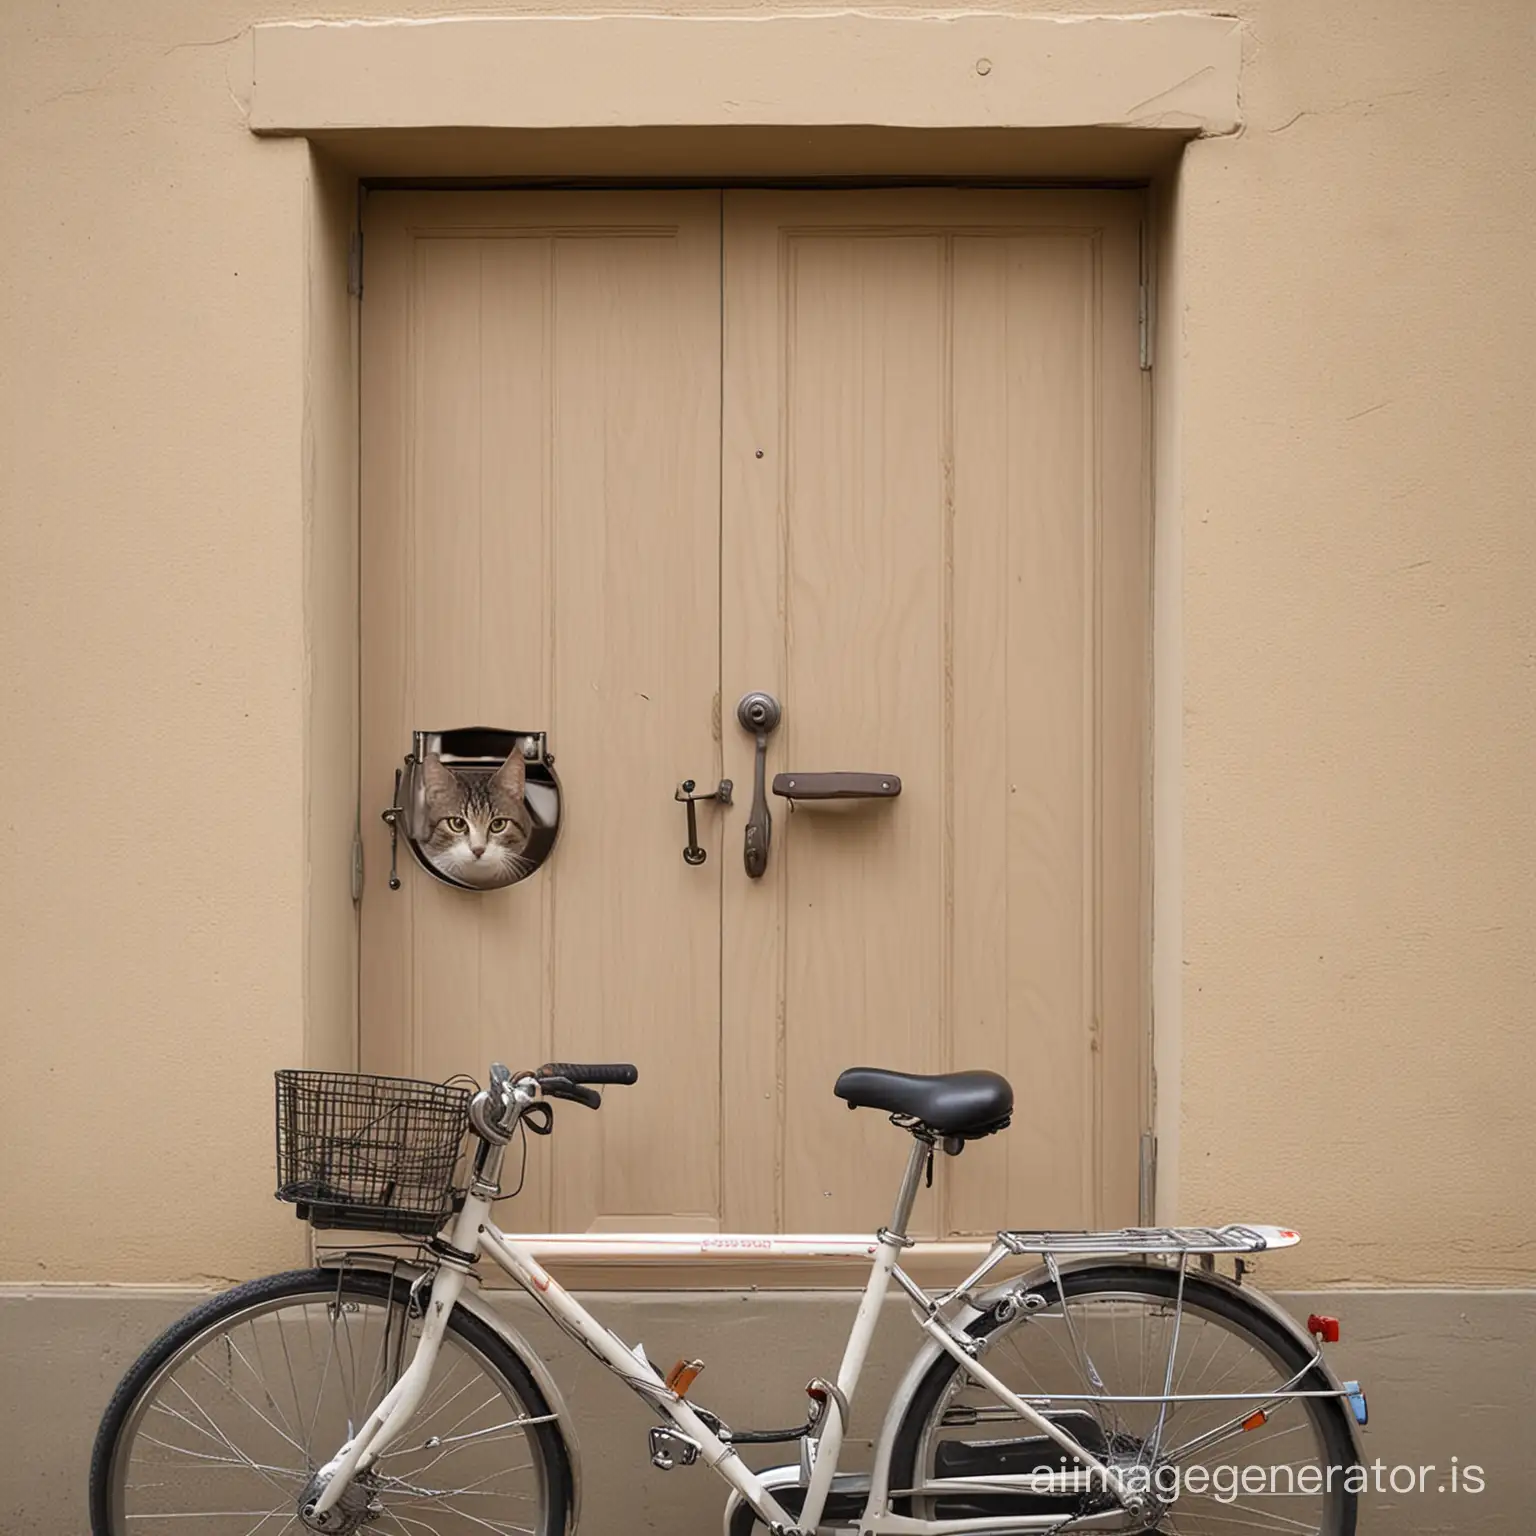 Cat-Riding-a-Bicycle-Through-Open-Doors